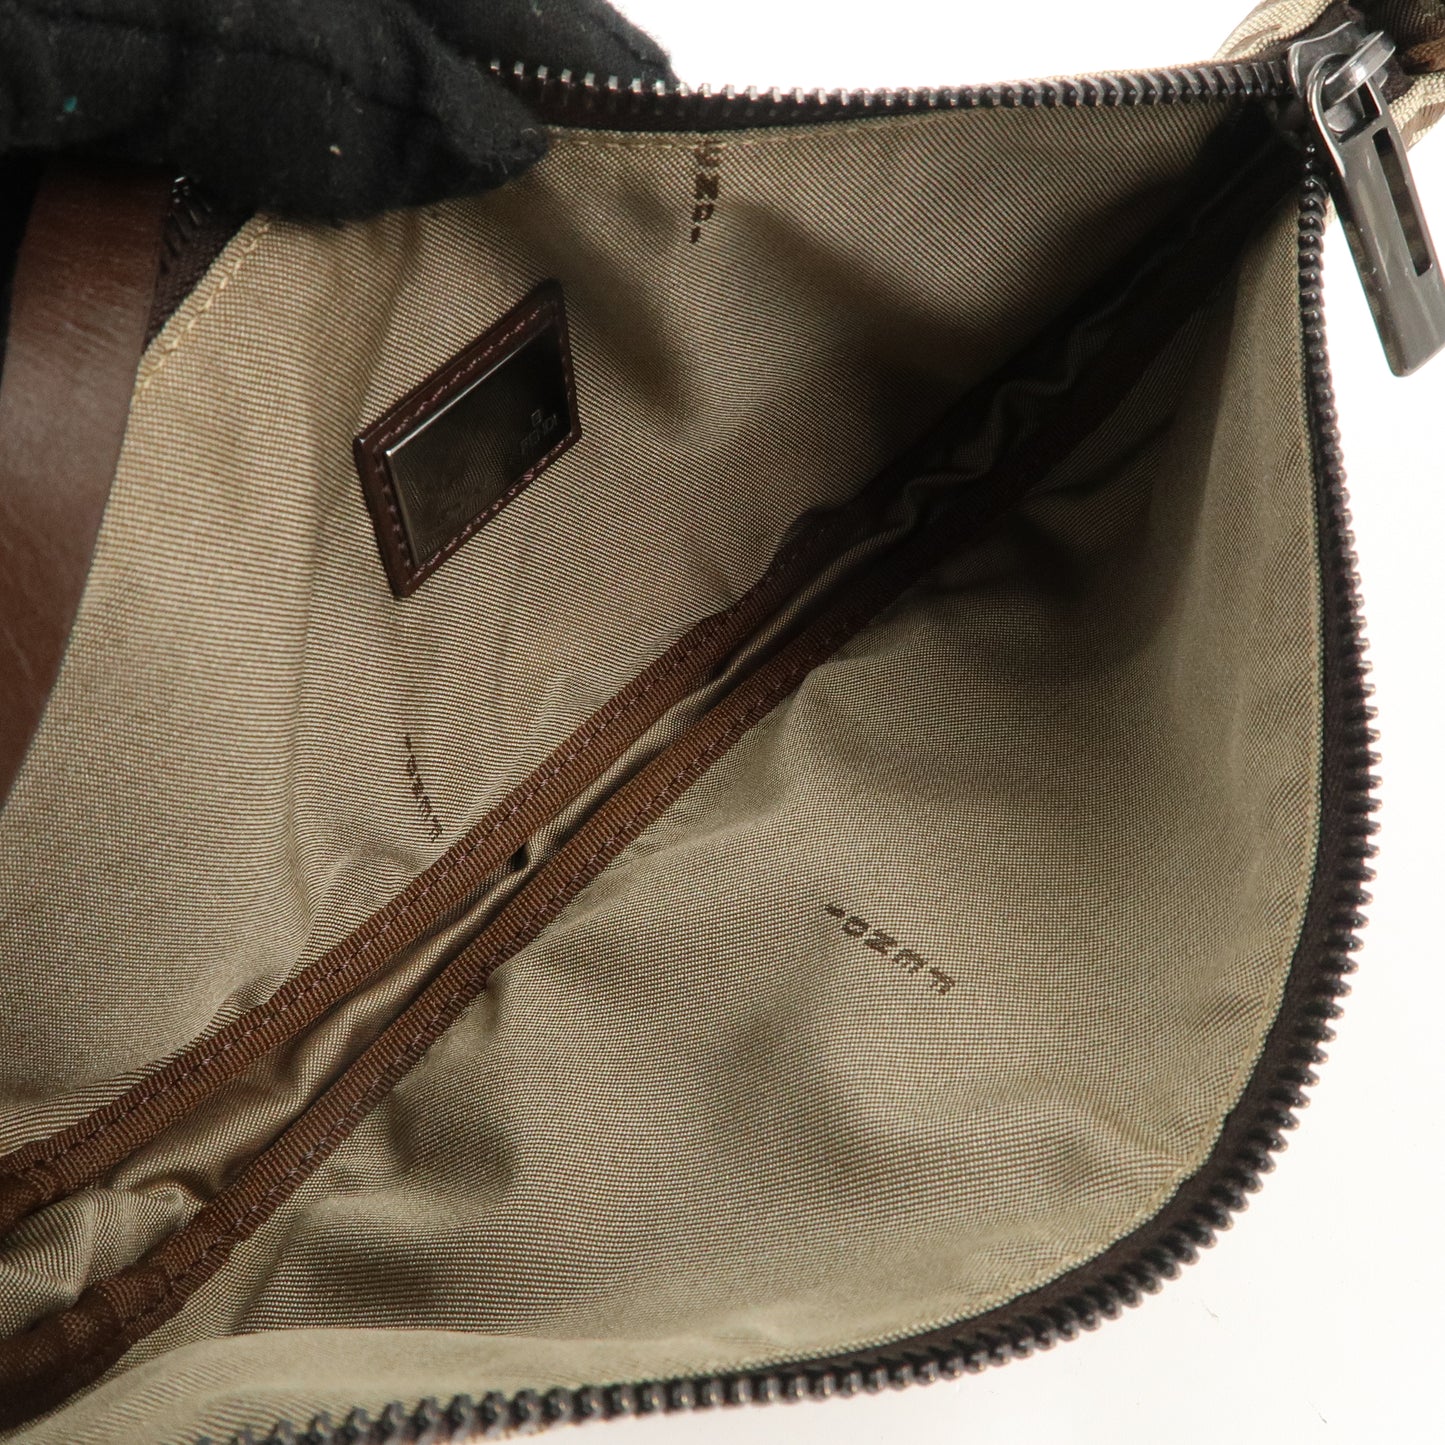 FENDI Zucchino Canvas Leather Shoulder Bag Brown Beige 8BR133